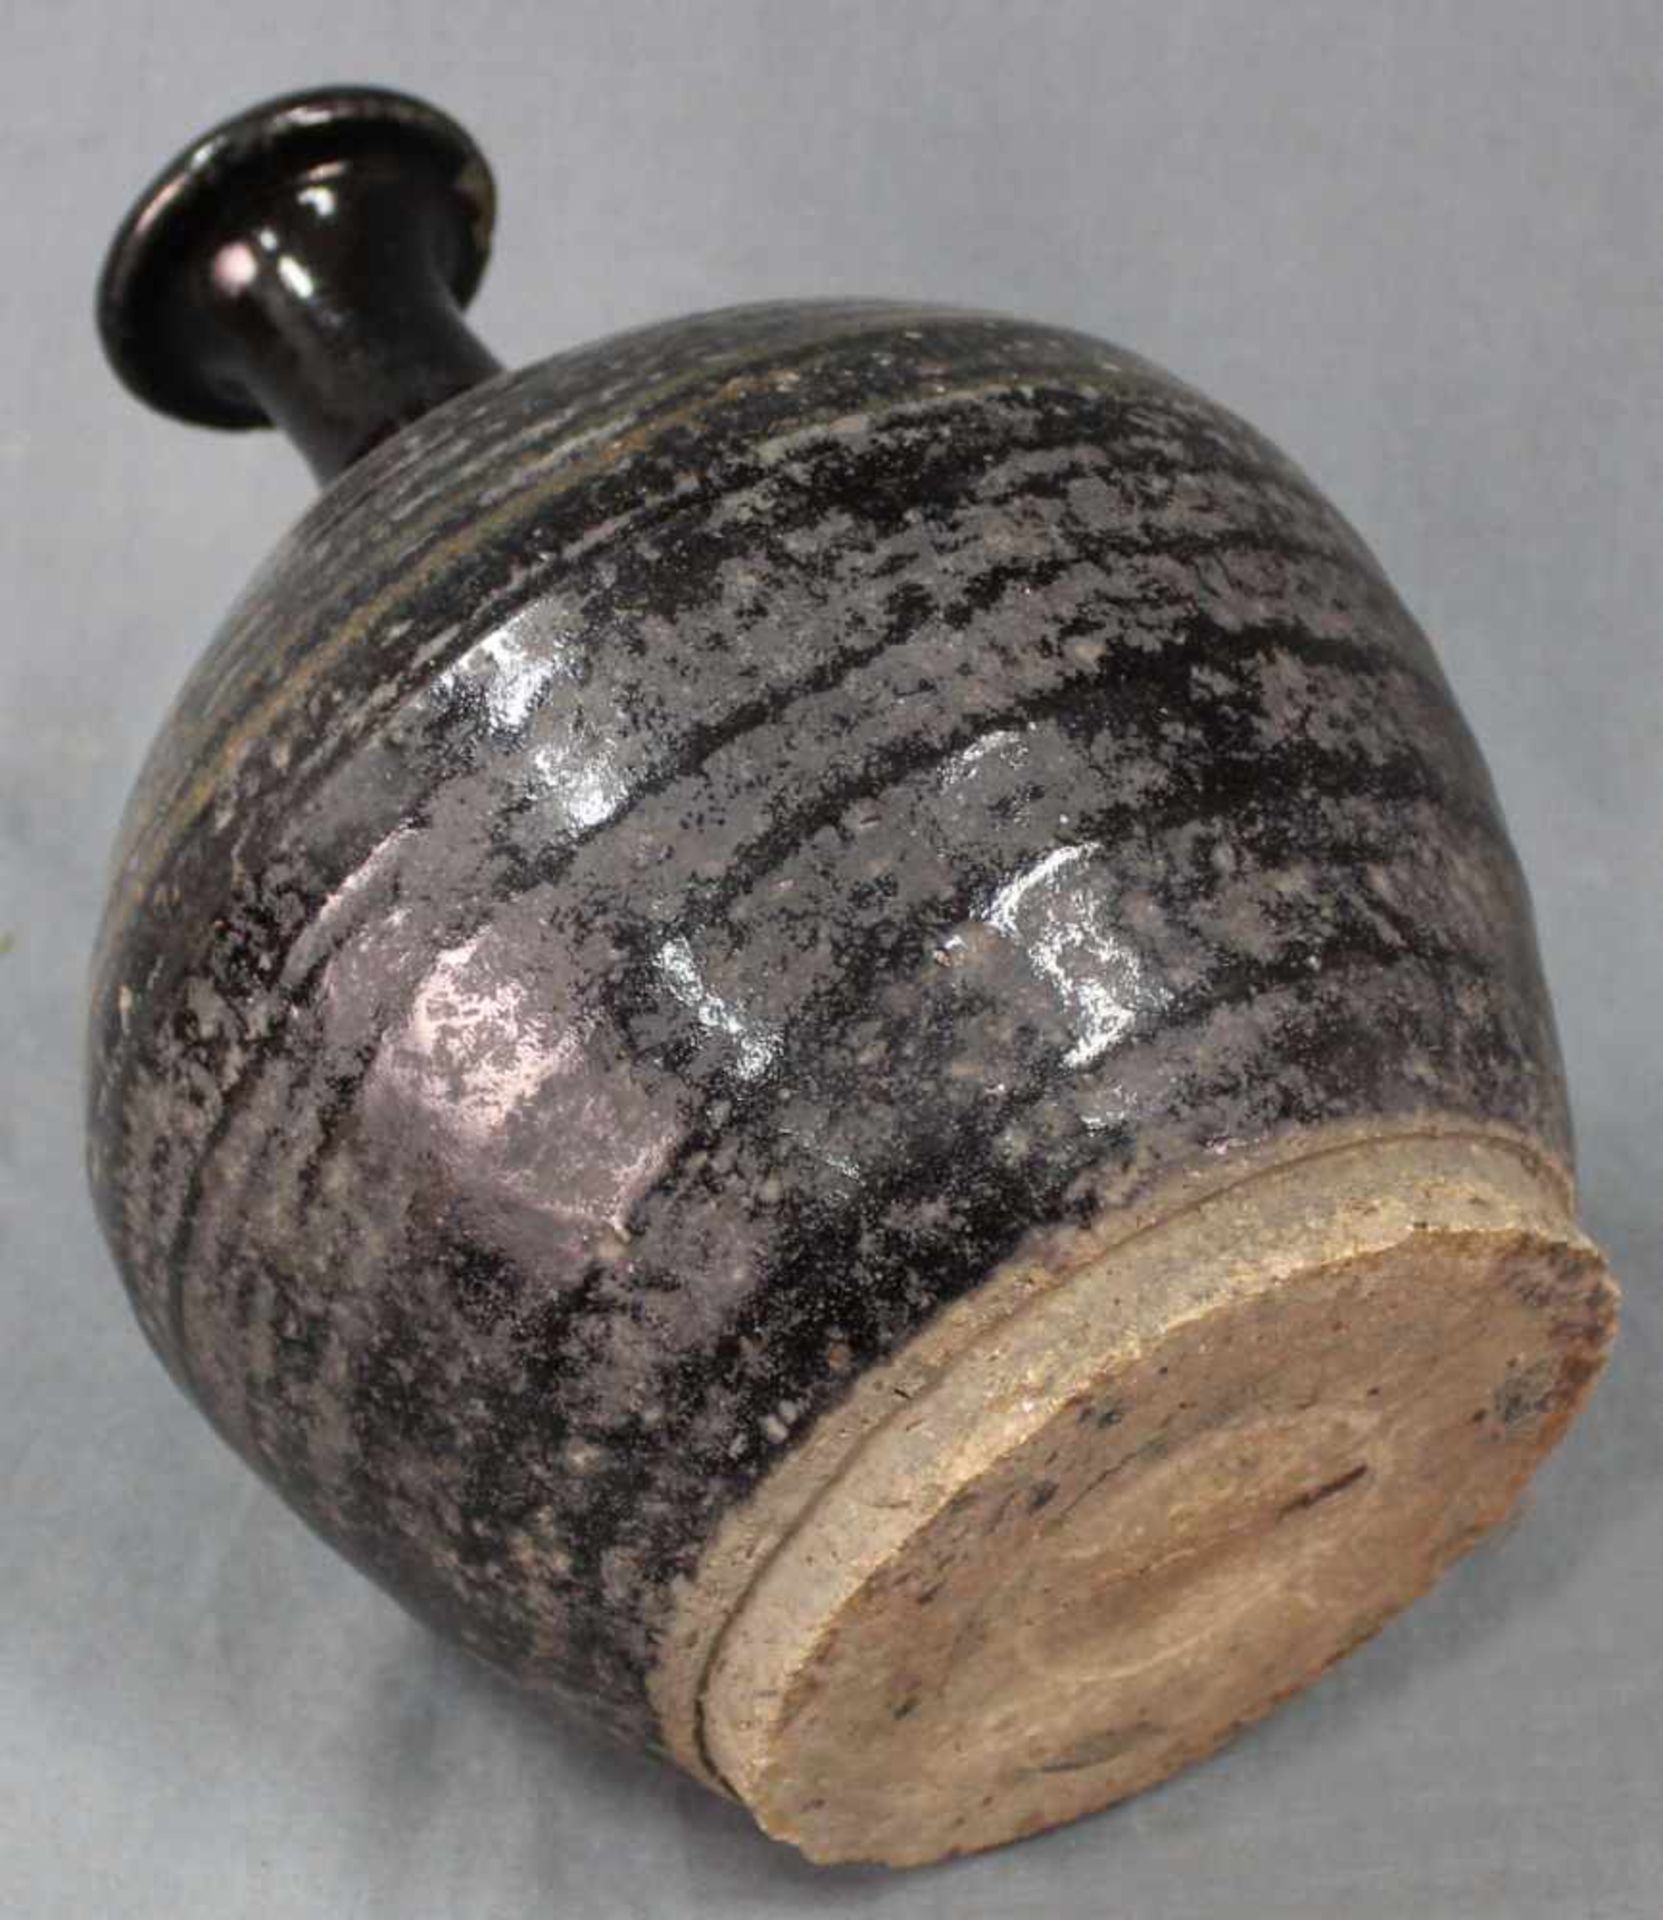 Bauchige Vase. Vorratsgefäß. Steingut. Schwarze Glasur. Wohl Zentralasien, antik.34 cm hoch.Vase. - Image 7 of 7